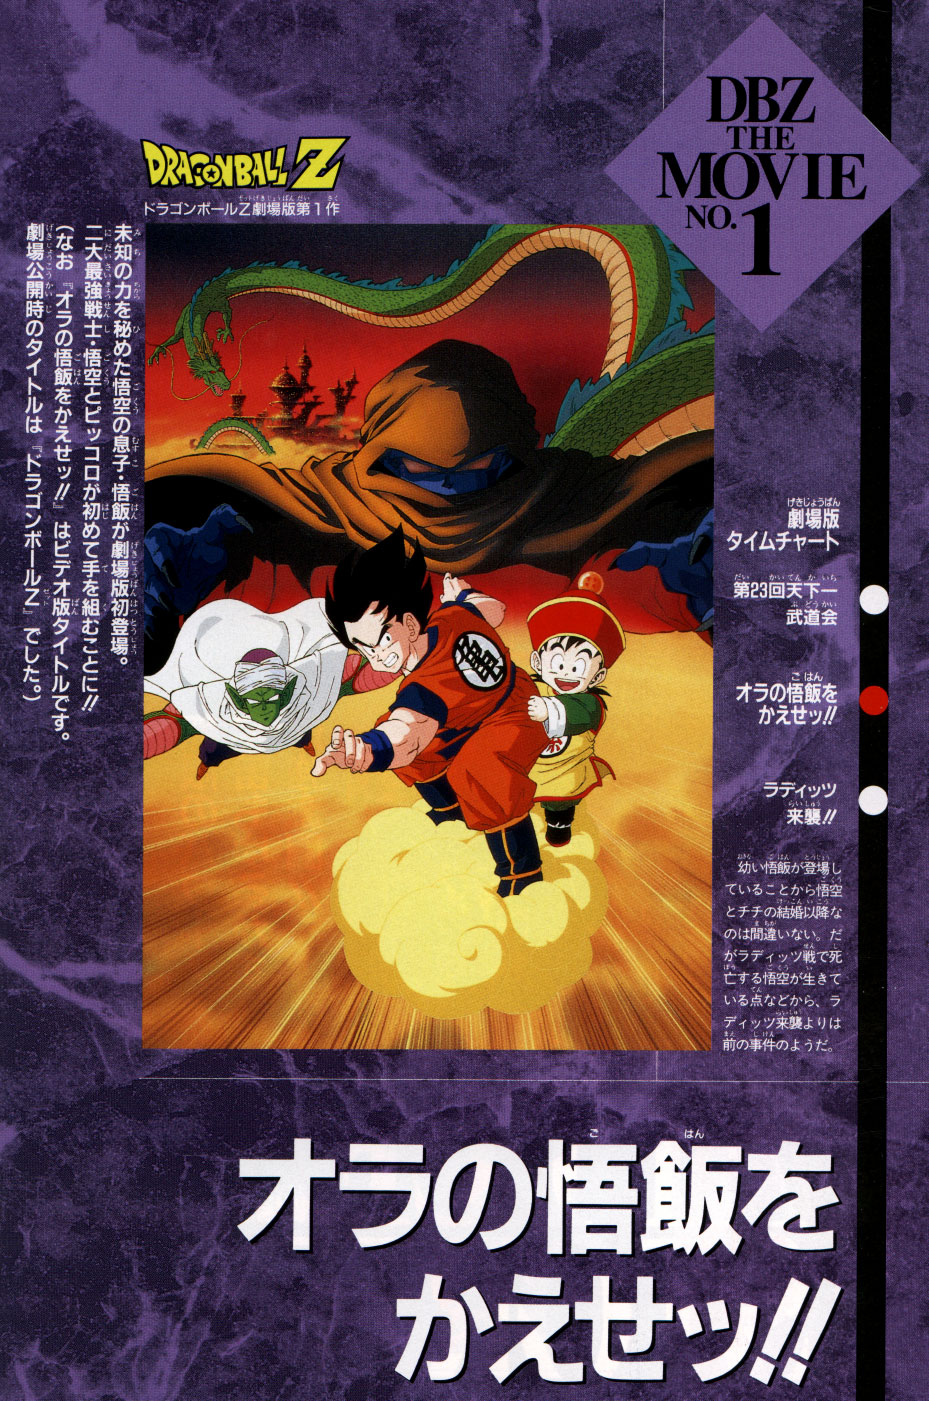 Dragon Ball Z movie 1 | Japanese Anime Wiki | FANDOM powered by Wikia